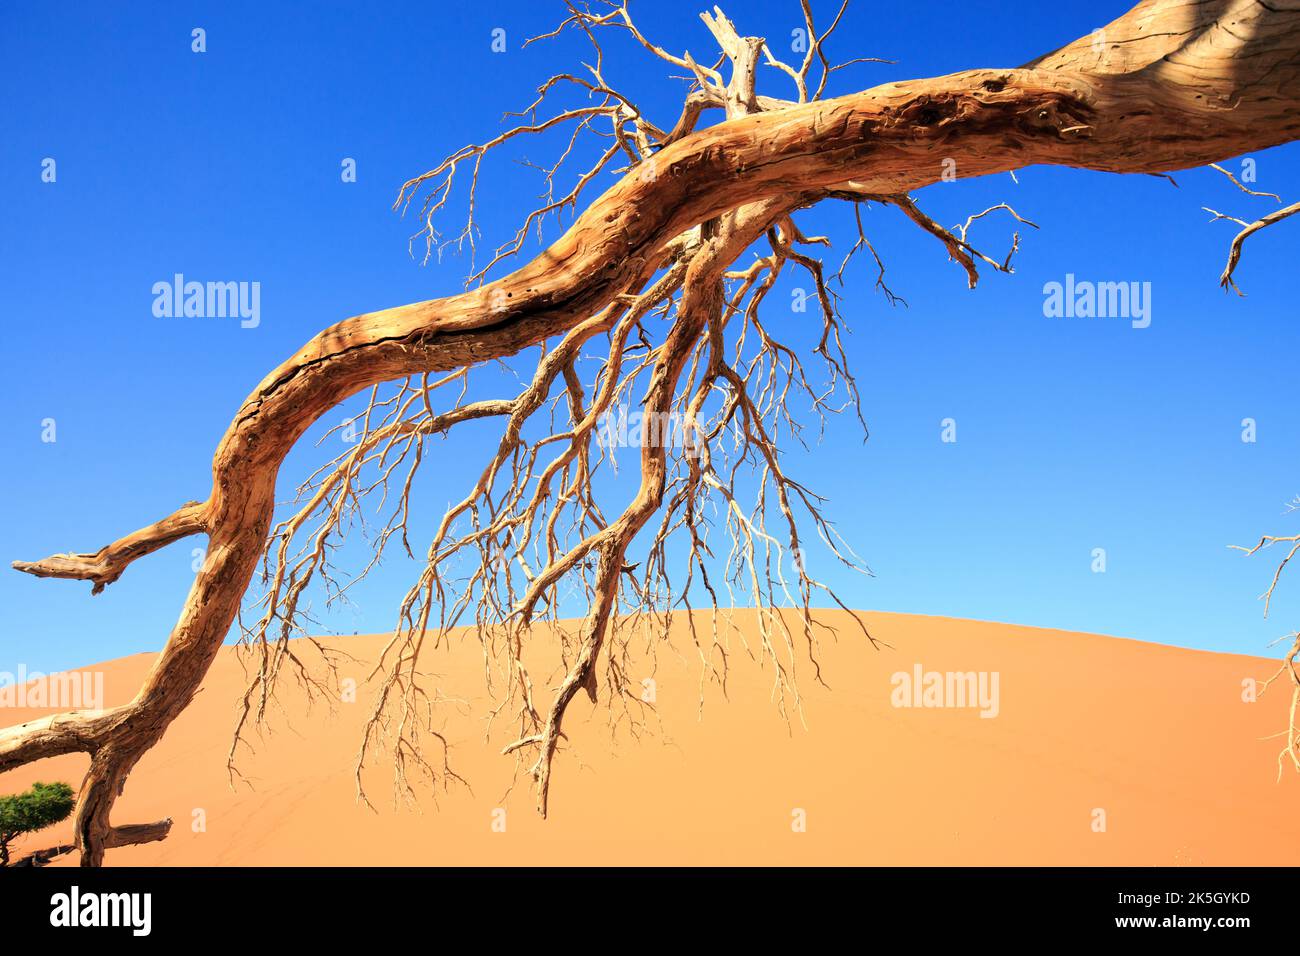 Ein alter toter Holzbaum mit spindelförmigen Ästen mit orangen Sanddünen und hellblauem Himmel, Namib Naukluft, Namibia Stockfoto